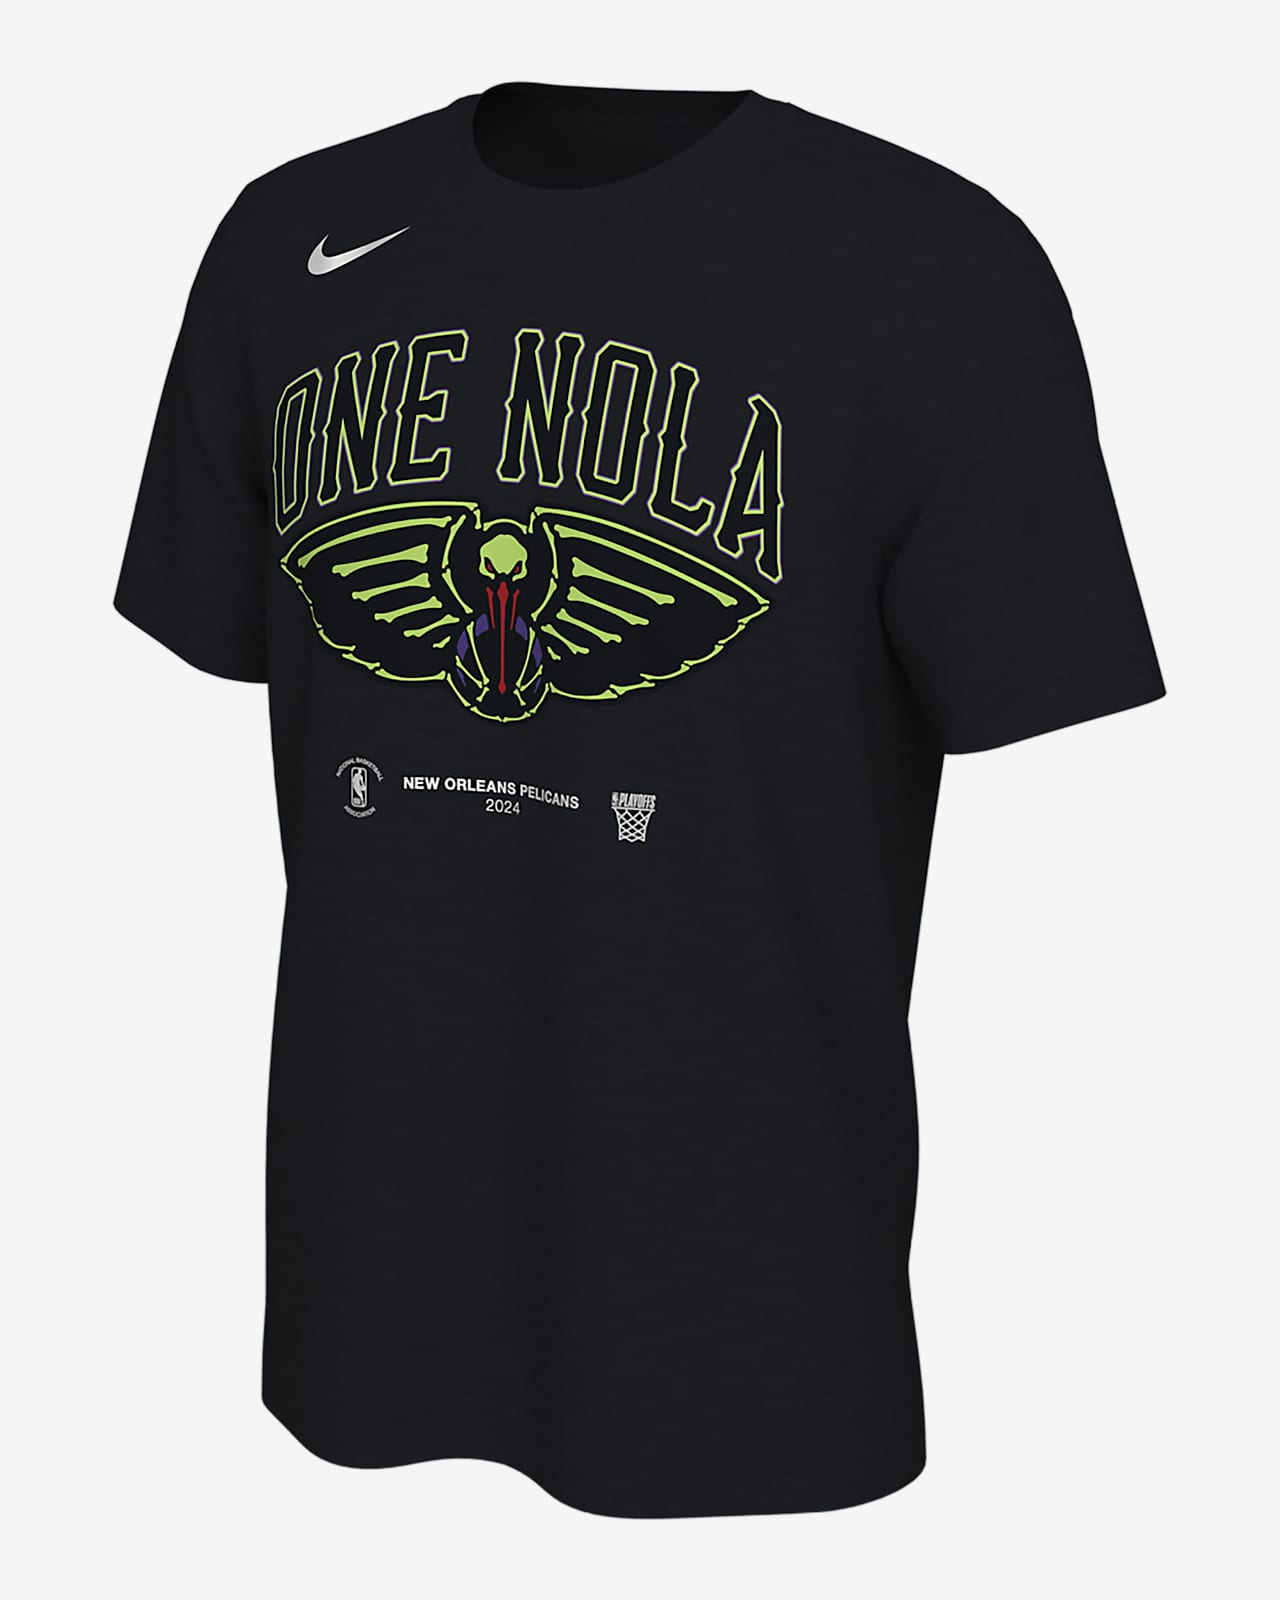 Playera Nike NBA New Orleans Pelicans para hombre